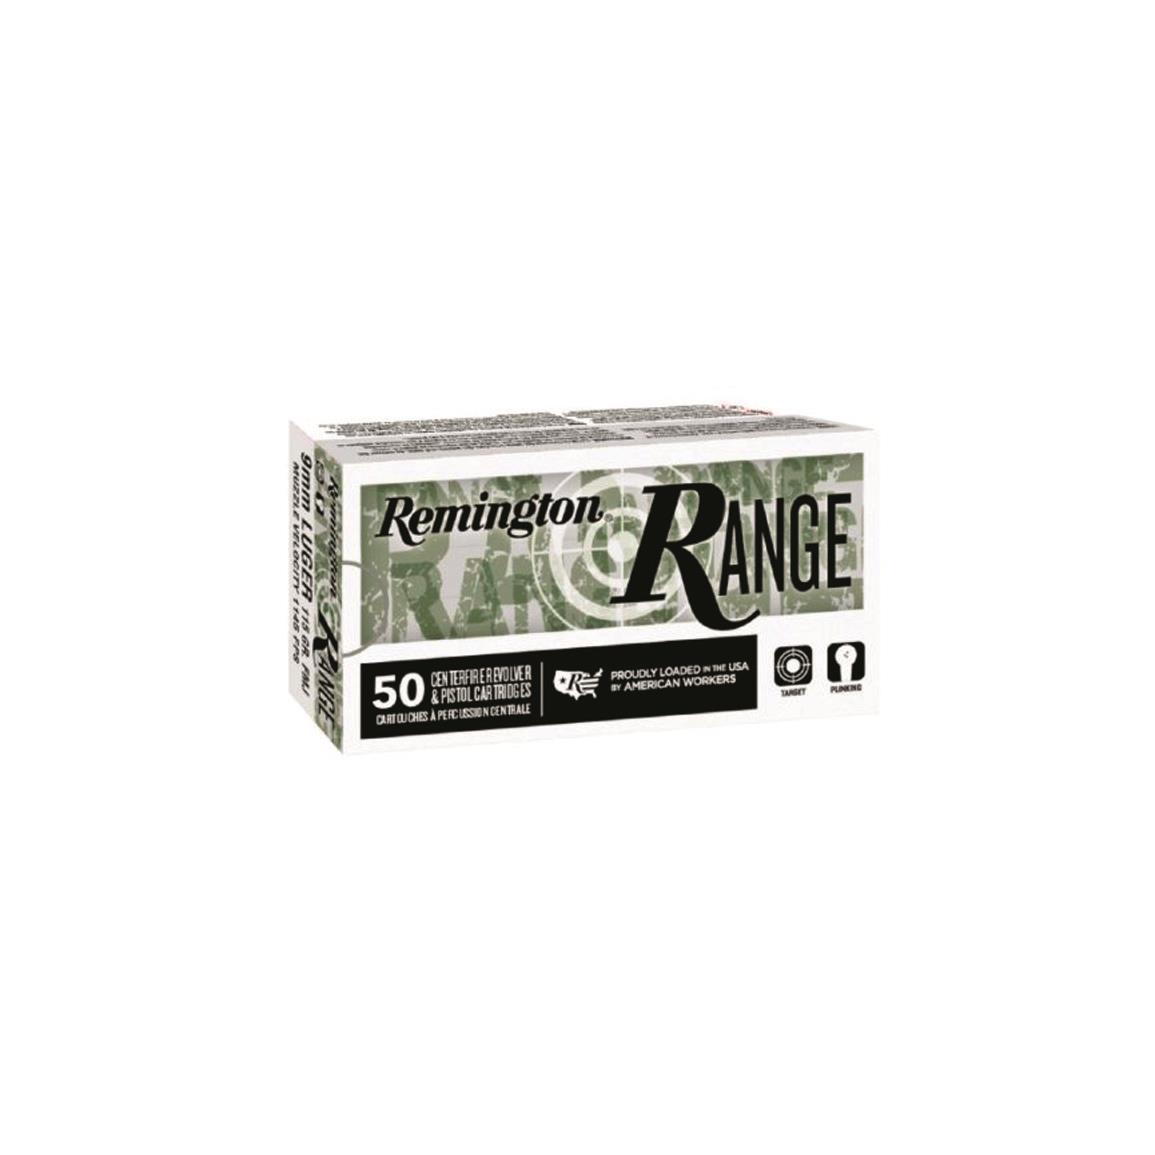 Remington Range, 9mm, FMJ, 115 Grain, 50 Rounds